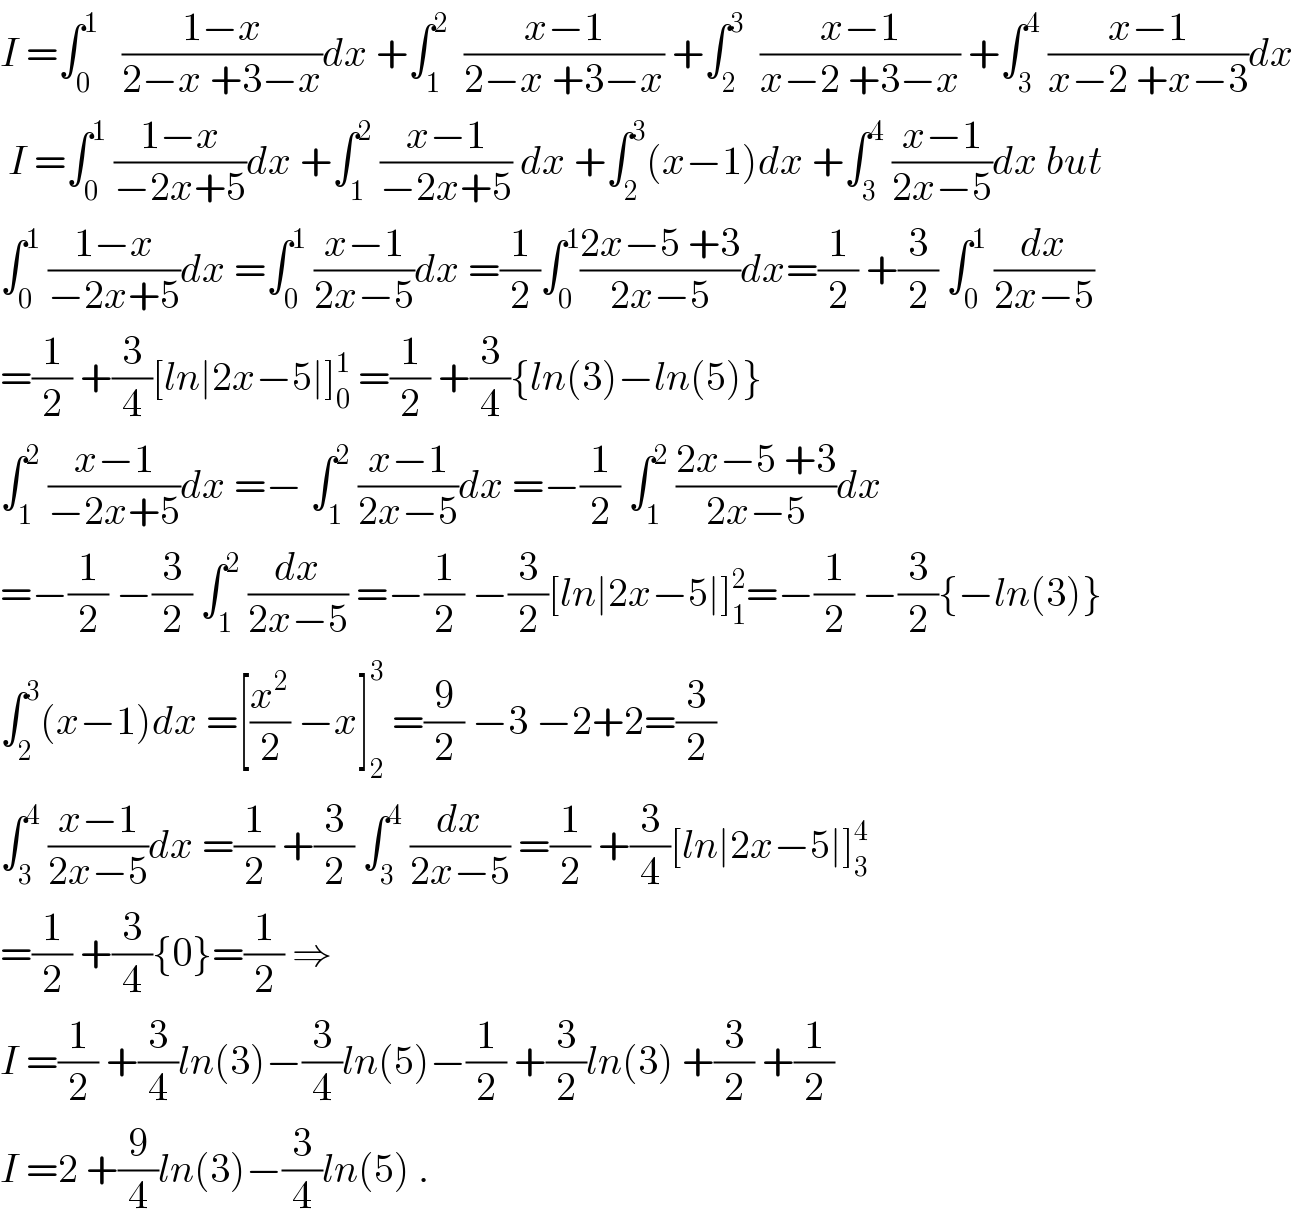 I =∫_0 ^1    ((1−x)/(2−x +3−x))dx +∫_1 ^2   ((x−1)/(2−x +3−x)) +∫_2 ^3   ((x−1)/(x−2 +3−x)) +∫_3 ^4  ((x−1)/(x−2 +x−3))dx   I =∫_0 ^1  ((1−x)/(−2x+5))dx +∫_1 ^2  ((x−1)/(−2x+5)) dx +∫_2 ^3 (x−1)dx +∫_3 ^4  ((x−1)/(2x−5))dx but  ∫_0 ^1  ((1−x)/(−2x+5))dx =∫_0 ^1  ((x−1)/(2x−5))dx =(1/2)∫_0 ^1 ((2x−5 +3)/(2x−5))dx=(1/2) +(3/2) ∫_0 ^1  (dx/(2x−5))  =(1/2) +(3/4)[ln∣2x−5∣]_0 ^1  =(1/2) +(3/4){ln(3)−ln(5)}  ∫_1 ^2  ((x−1)/(−2x+5))dx =− ∫_1 ^2  ((x−1)/(2x−5))dx =−(1/2) ∫_1 ^2  ((2x−5 +3)/(2x−5))dx  =−(1/2) −(3/2) ∫_1 ^2  (dx/(2x−5)) =−(1/2) −(3/2)[ln∣2x−5∣]_1 ^2 =−(1/2) −(3/2){−ln(3)}  ∫_2 ^3 (x−1)dx =[(x^2 /2) −x]_2 ^3  =(9/2) −3 −2+2=(3/2)  ∫_3 ^4  ((x−1)/(2x−5))dx =(1/2) +(3/2) ∫_3 ^4  (dx/(2x−5)) =(1/2) +(3/4)[ln∣2x−5∣]_3 ^4   =(1/2) +(3/4){0}=(1/2) ⇒  I =(1/2) +(3/4)ln(3)−(3/4)ln(5)−(1/2) +(3/2)ln(3) +(3/2) +(1/2)  I =2 +(9/4)ln(3)−(3/4)ln(5) .  